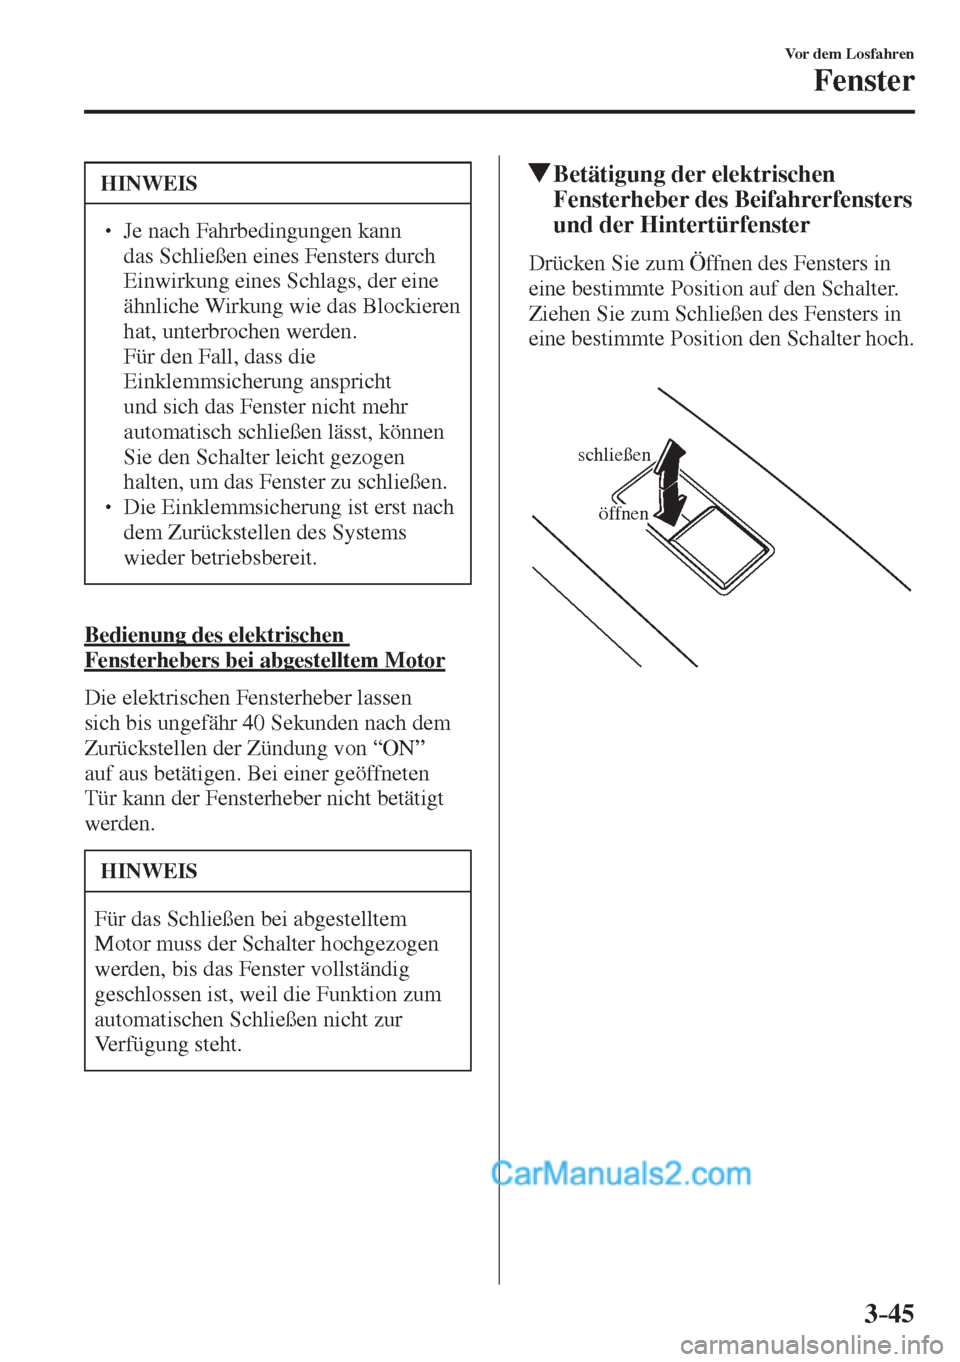 MAZDA MODEL 2 2017  Betriebsanleitung (in German) 3–45
Vor dem Losfahren
Fenster
 HINWEIS
� � ��  Je nach Fahrbedingungen kann 
das Schließen eines Fensters durch 
Einwirkung eines Schlags, der eine 
ähnliche Wirkung wie das Blockieren 
hat, u